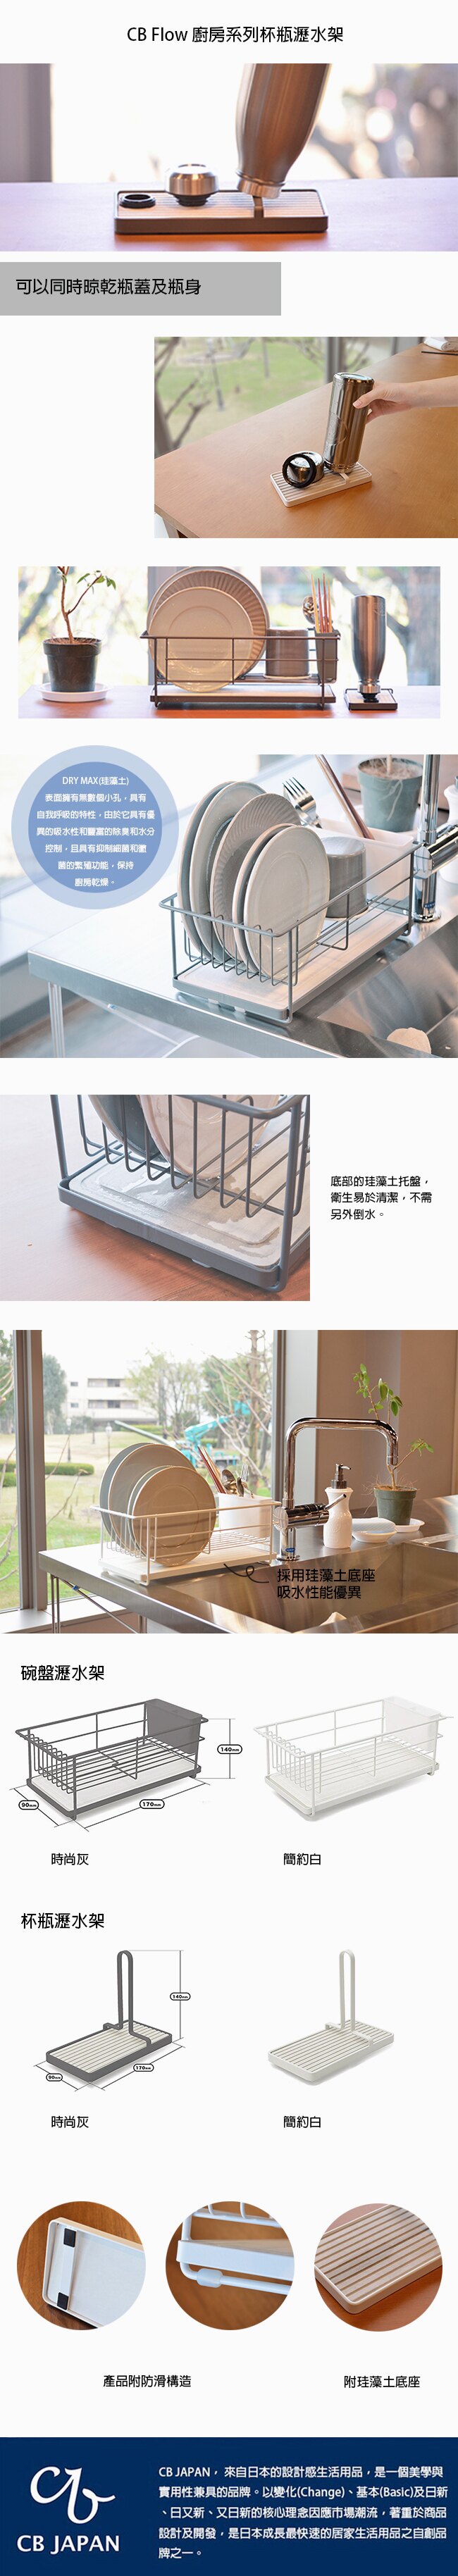 Cb Japan Flow 廚房系列杯瓶瀝水架 簡約白 附珪藻土底座 收納架 工業風 沐青選品